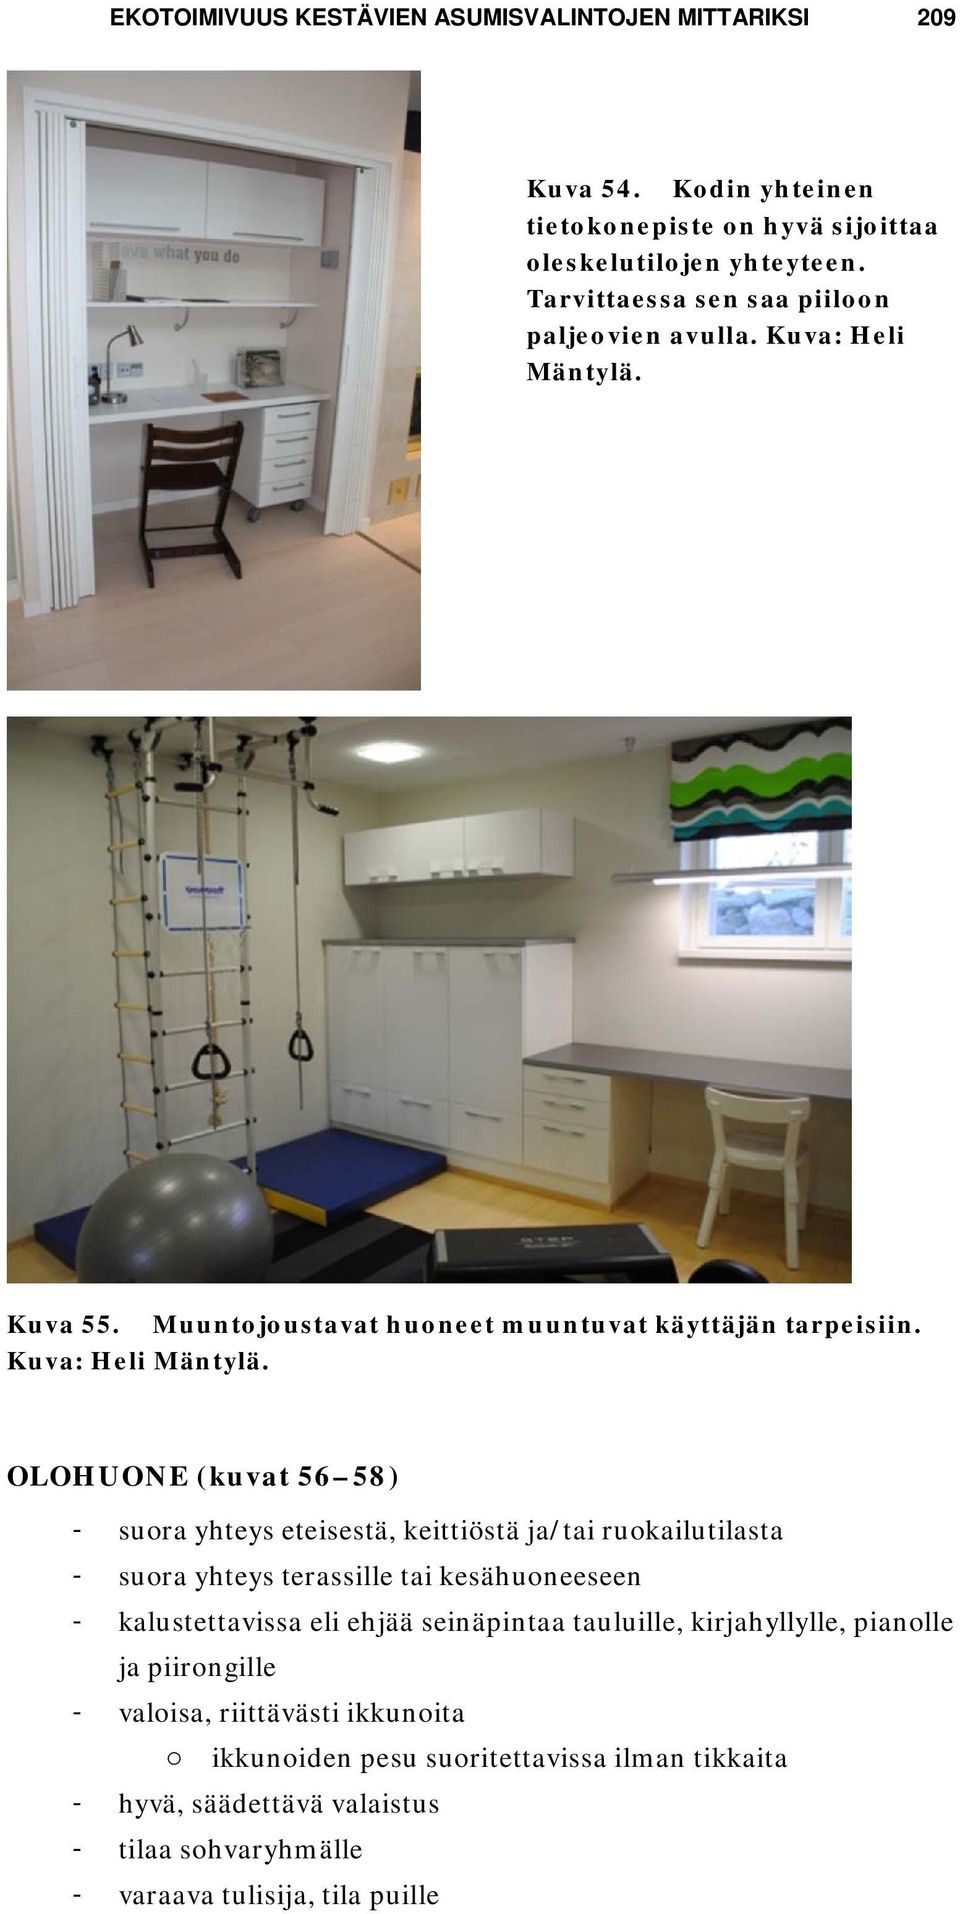 Kuva 55. Muuntojoustavat huoneet muuntuvat käyttäjän tarpeisiin. Kuva: Heli Mäntylä.